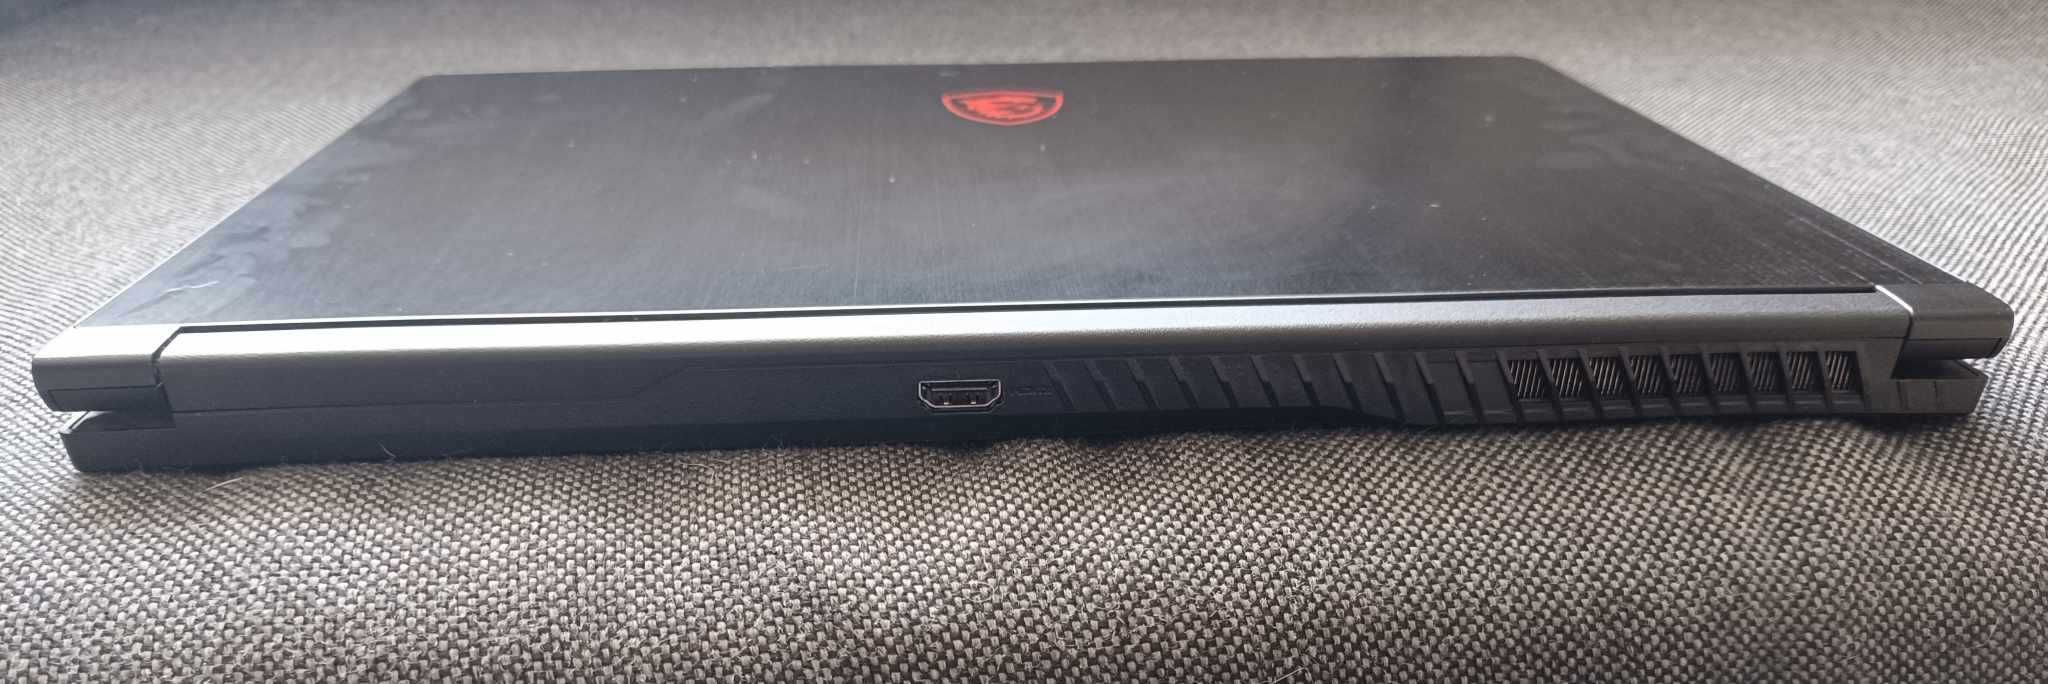 Laptop  MSI GF63